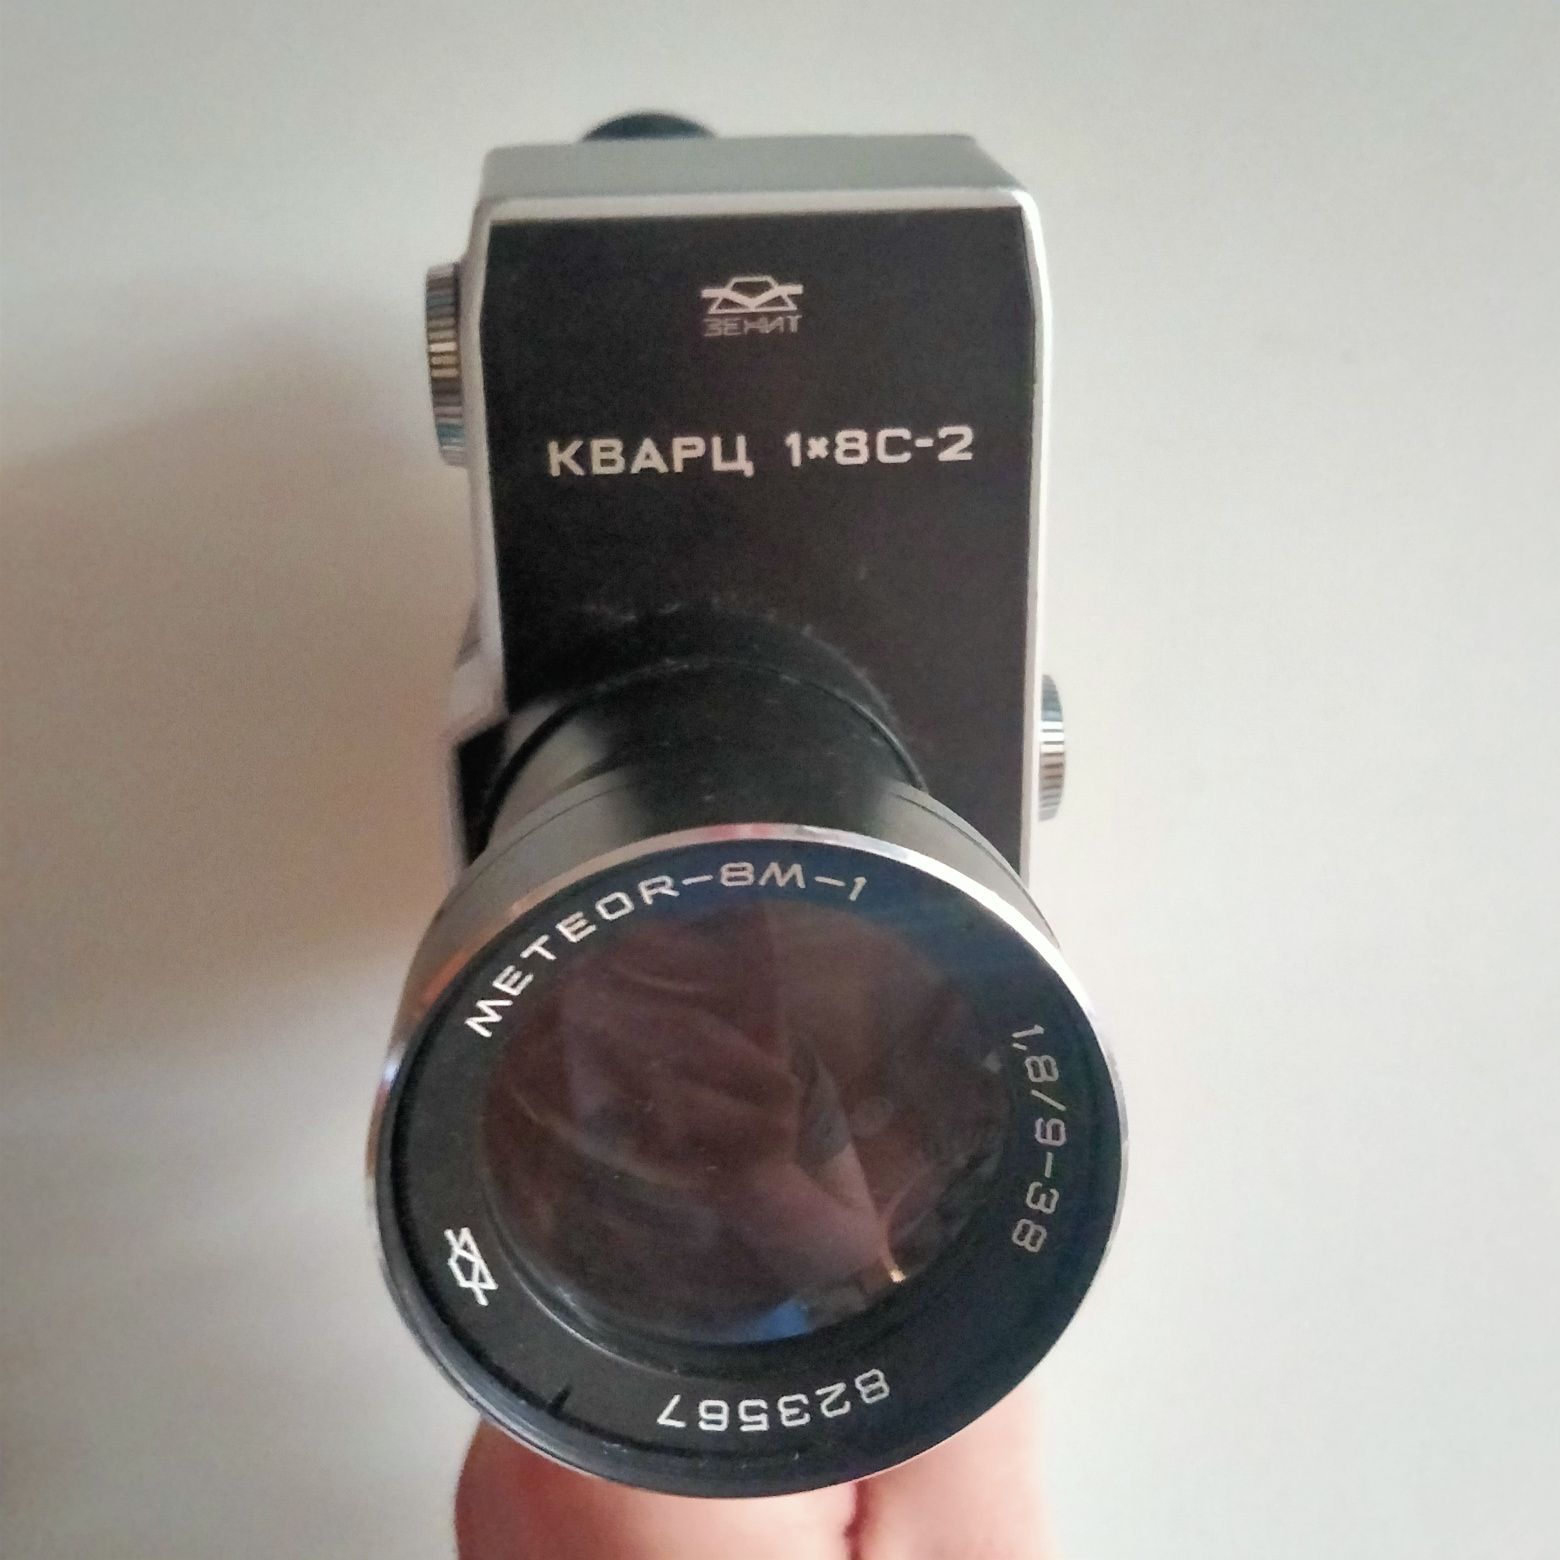 Kamera analogowa Zenit Quarz 1x8c-2